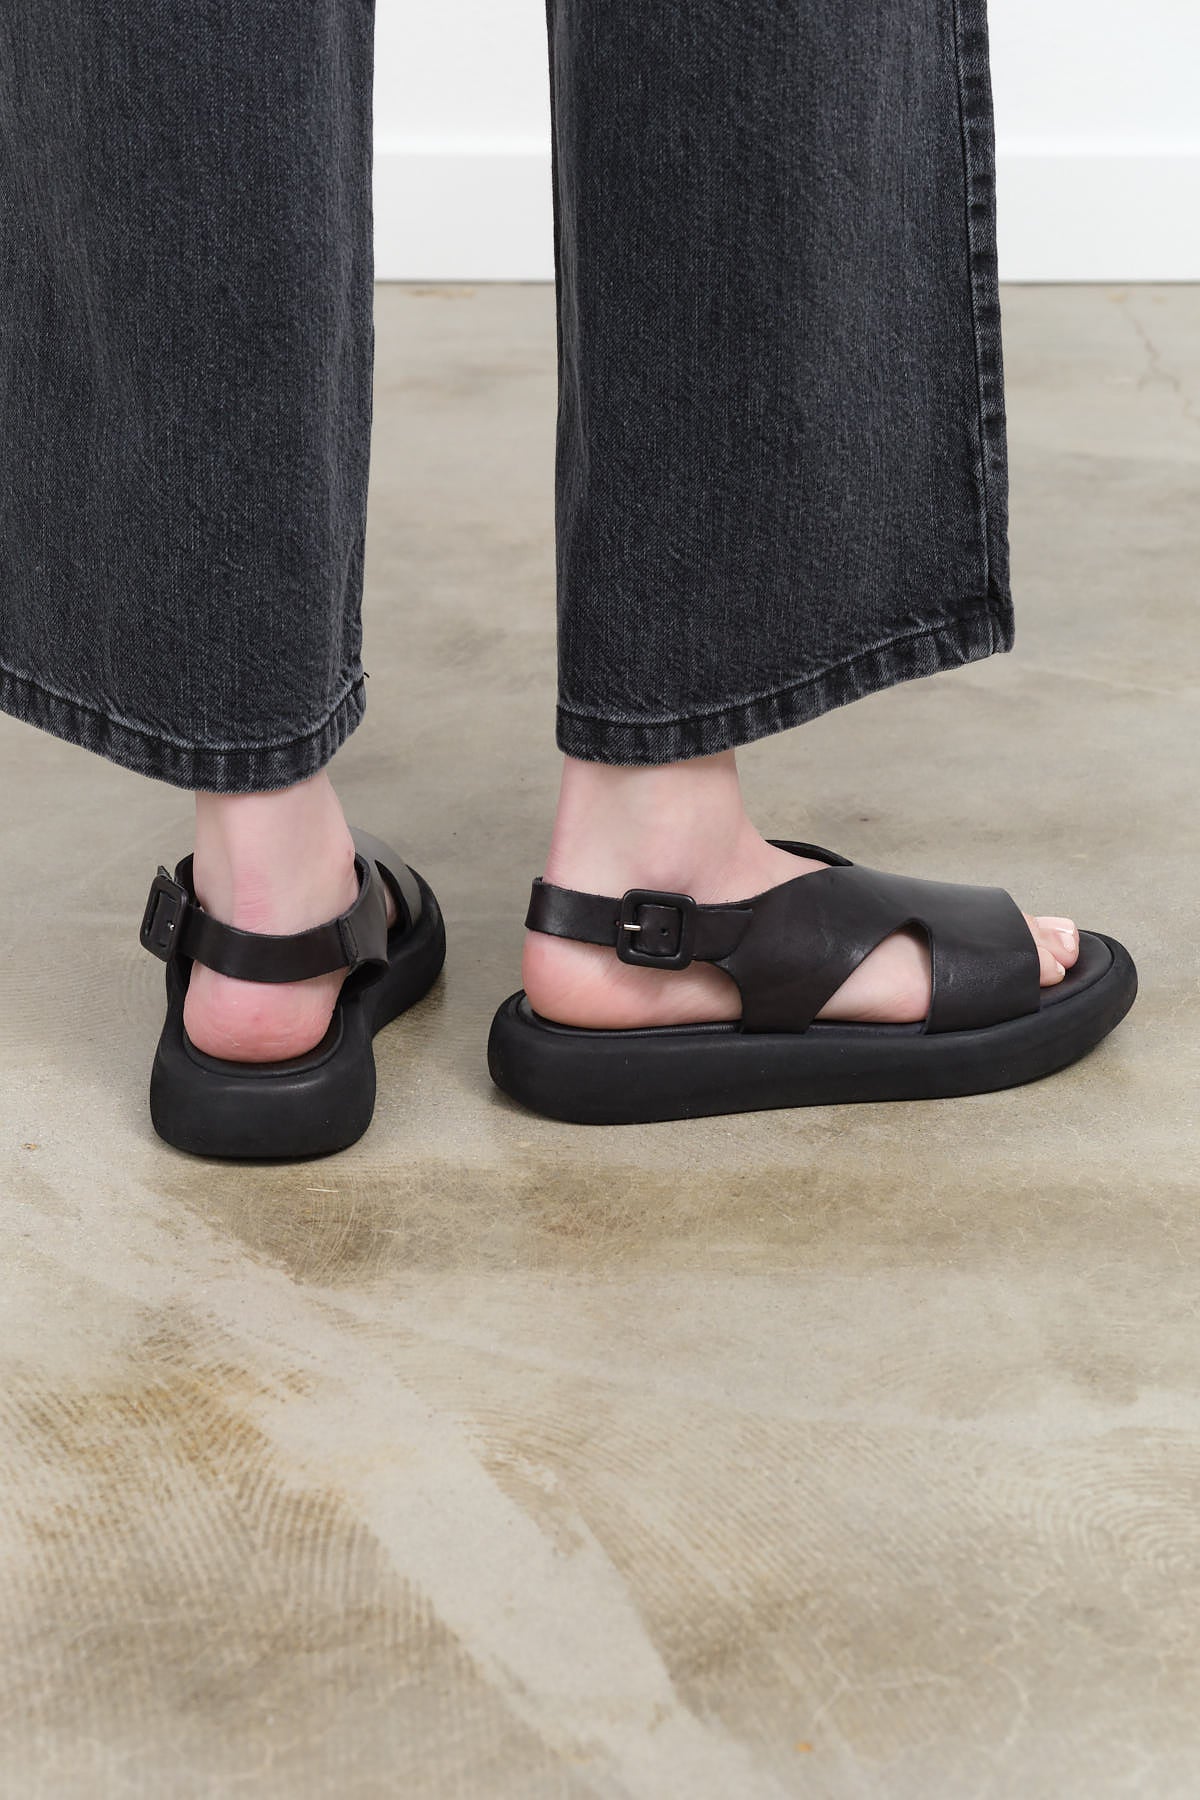 Black Leather India Platform Sandal by Brador Shoes with Adjustable Heel Strap